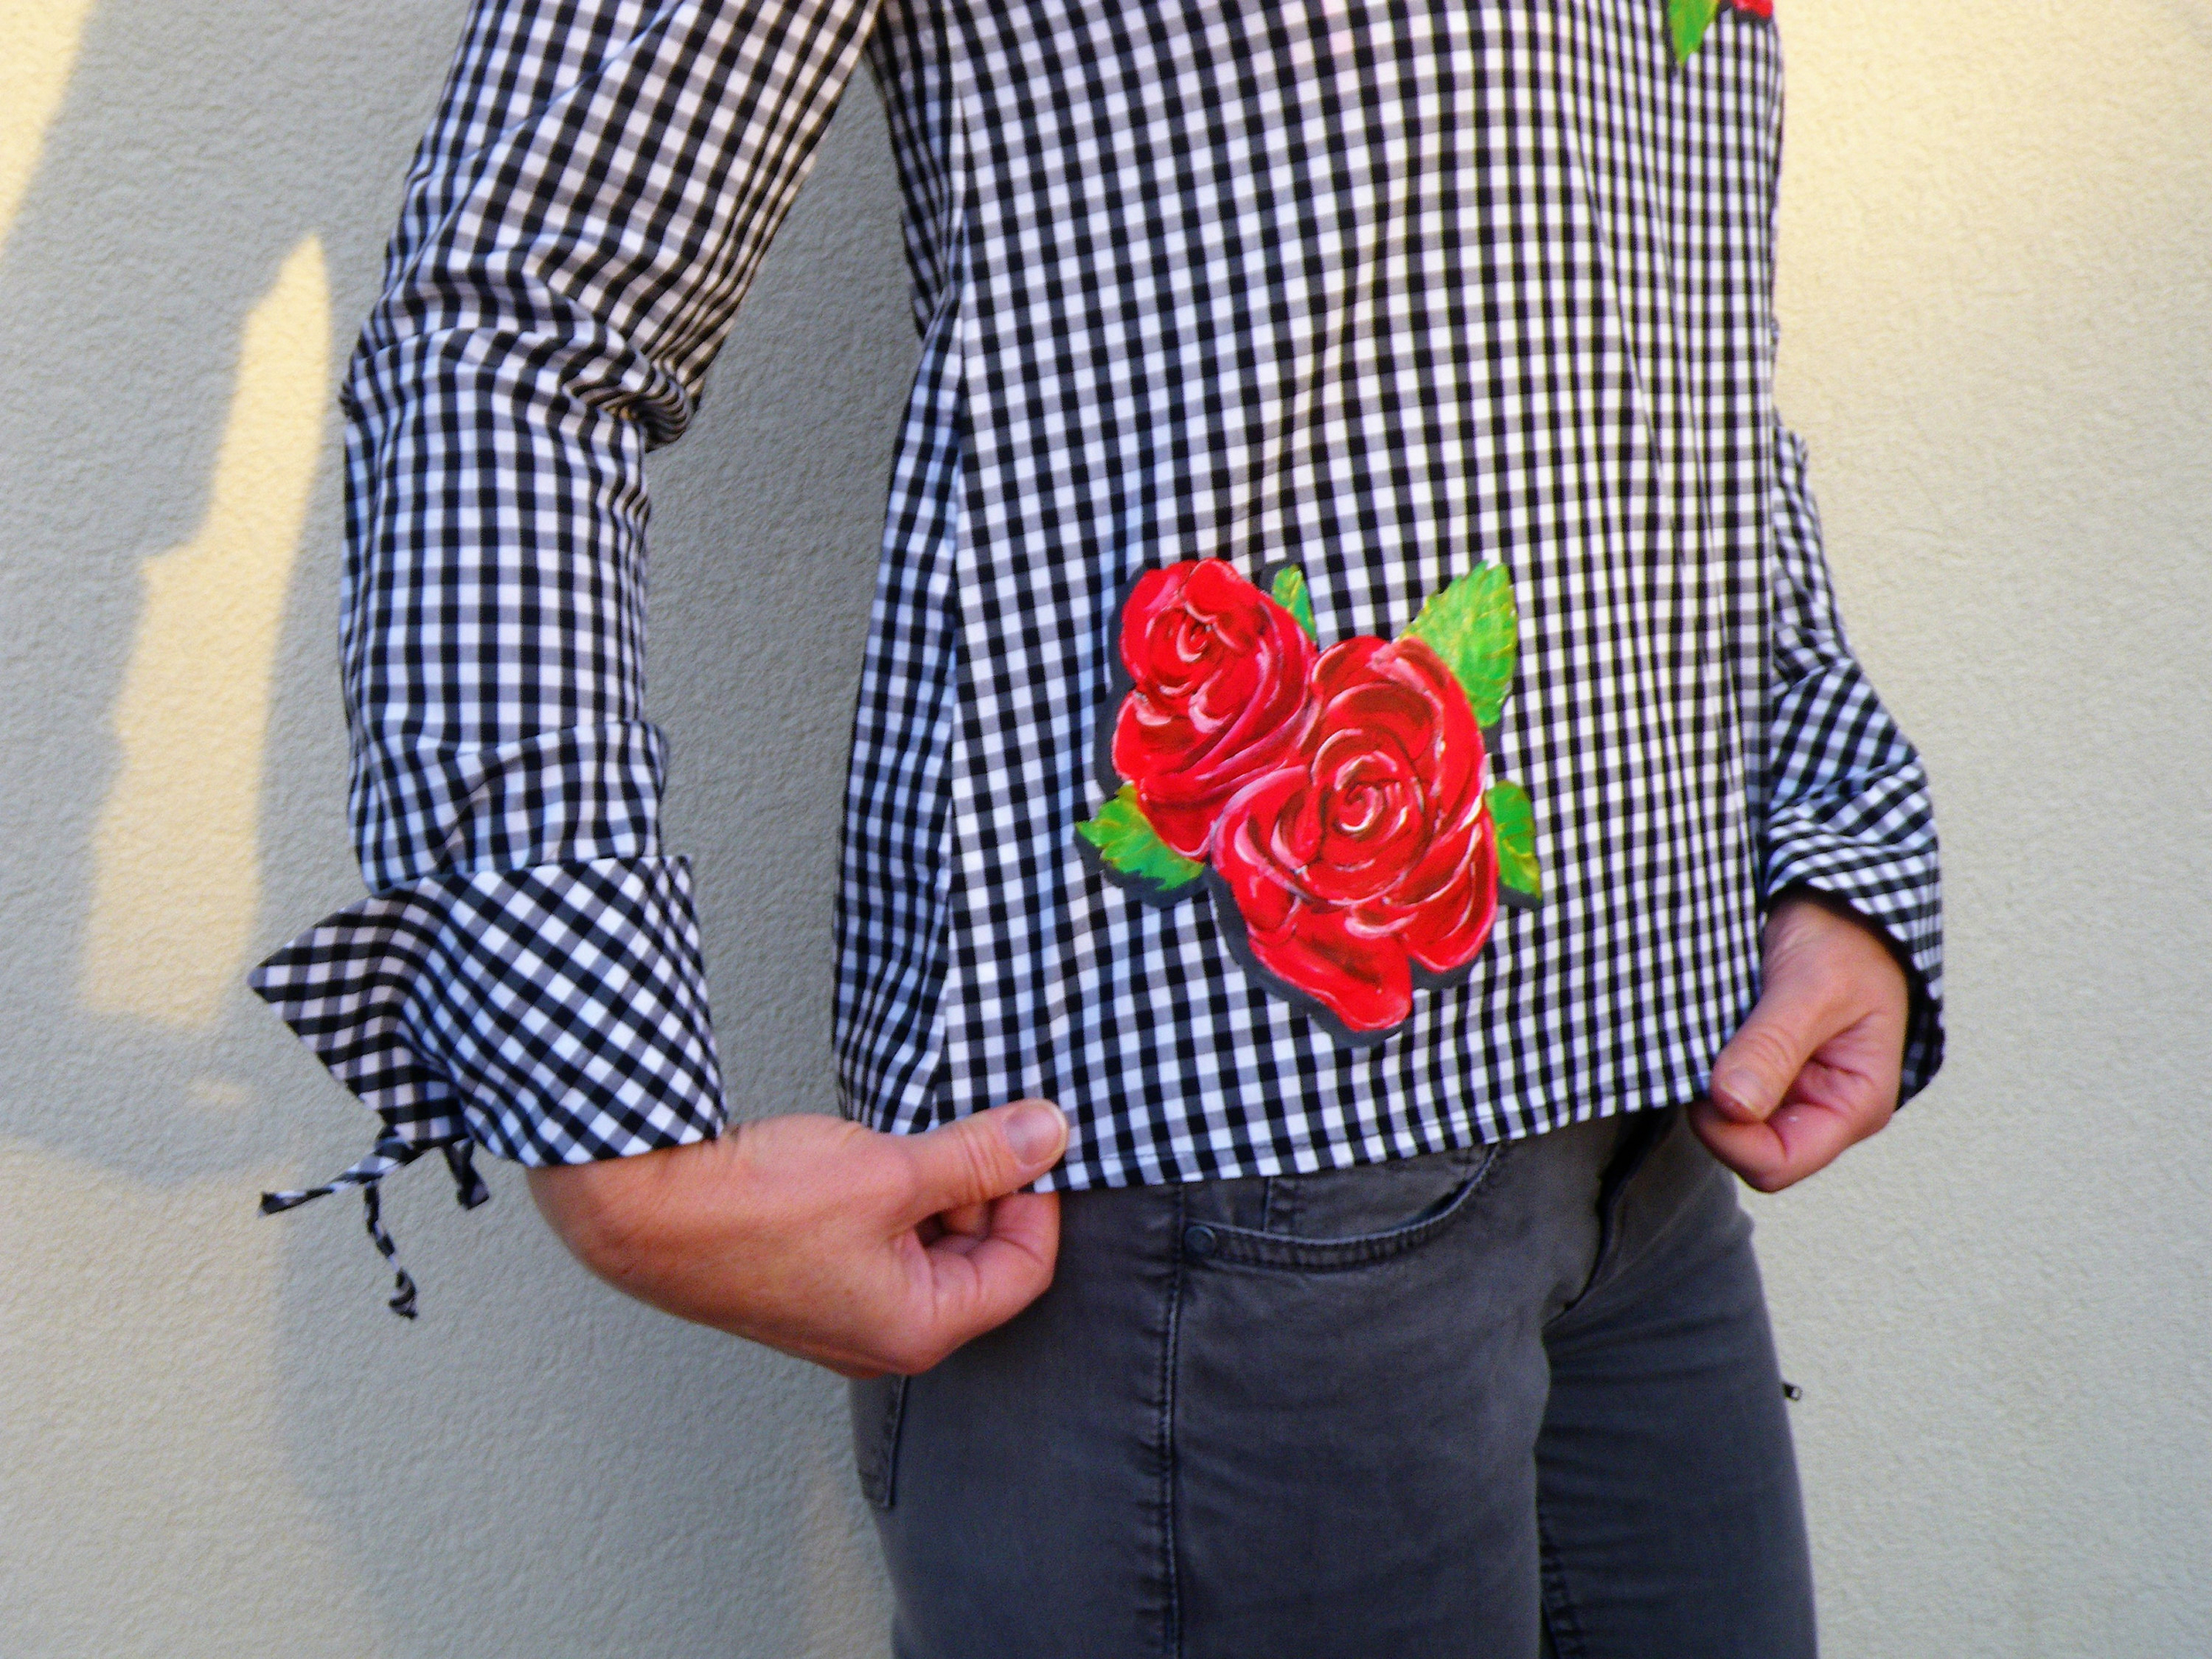 chemise femme pied-de-poule avec roses